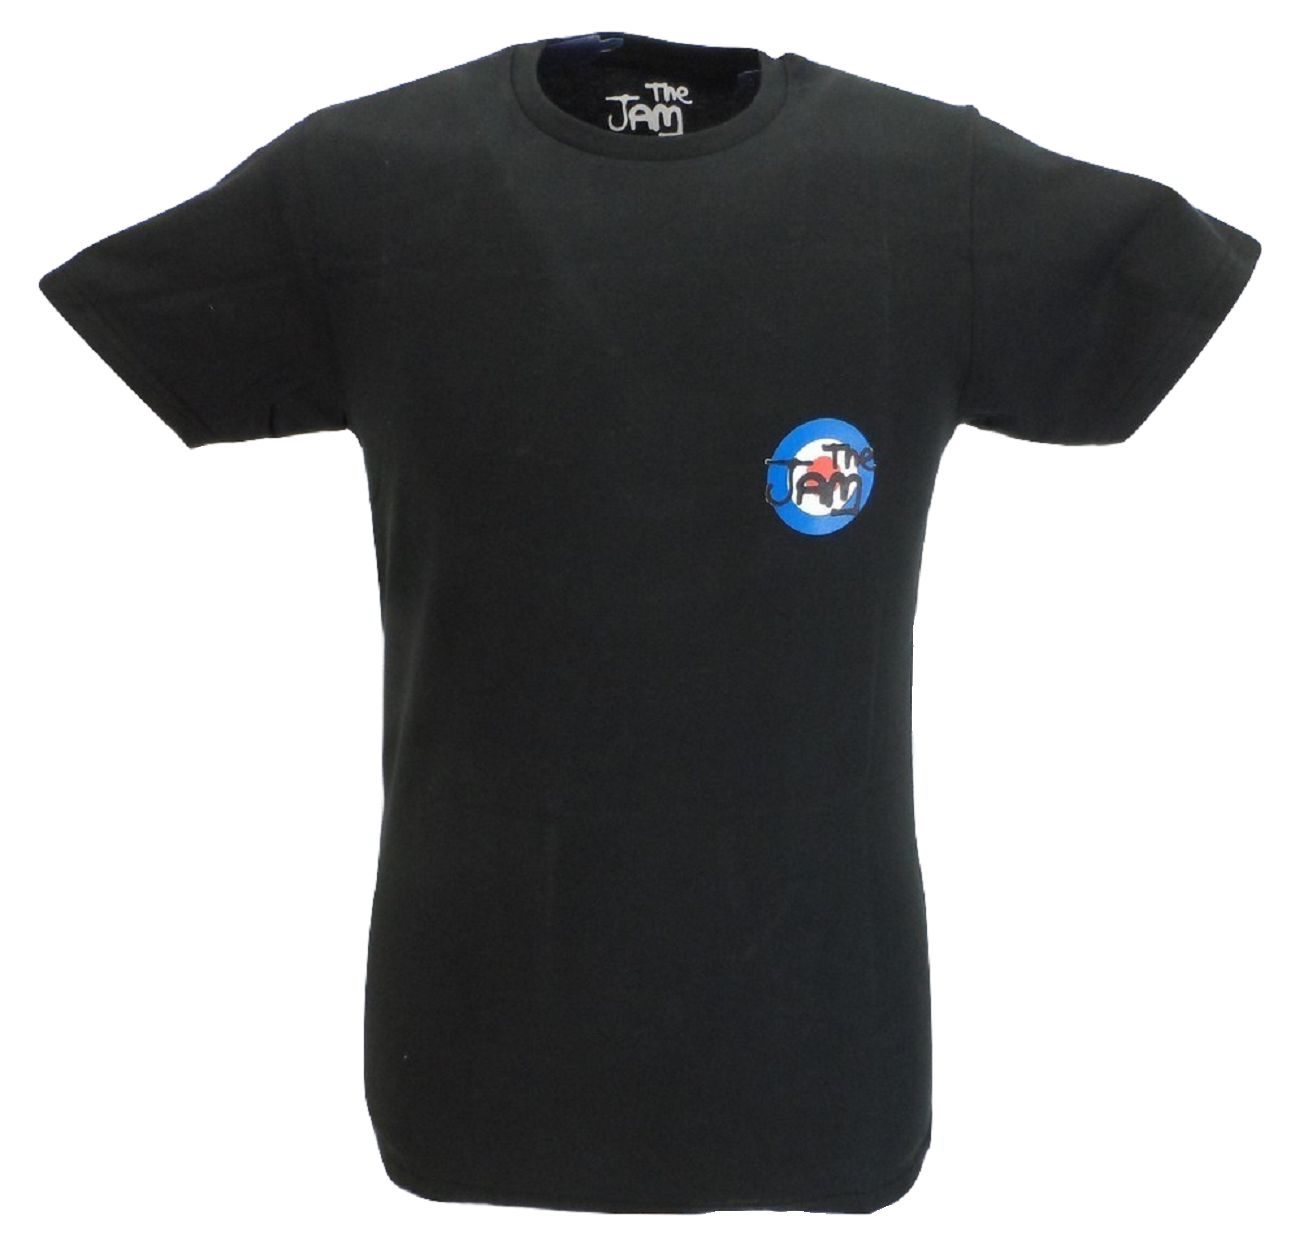 Camiseta oficial The Jam negra para hombre con estampado en la espalda